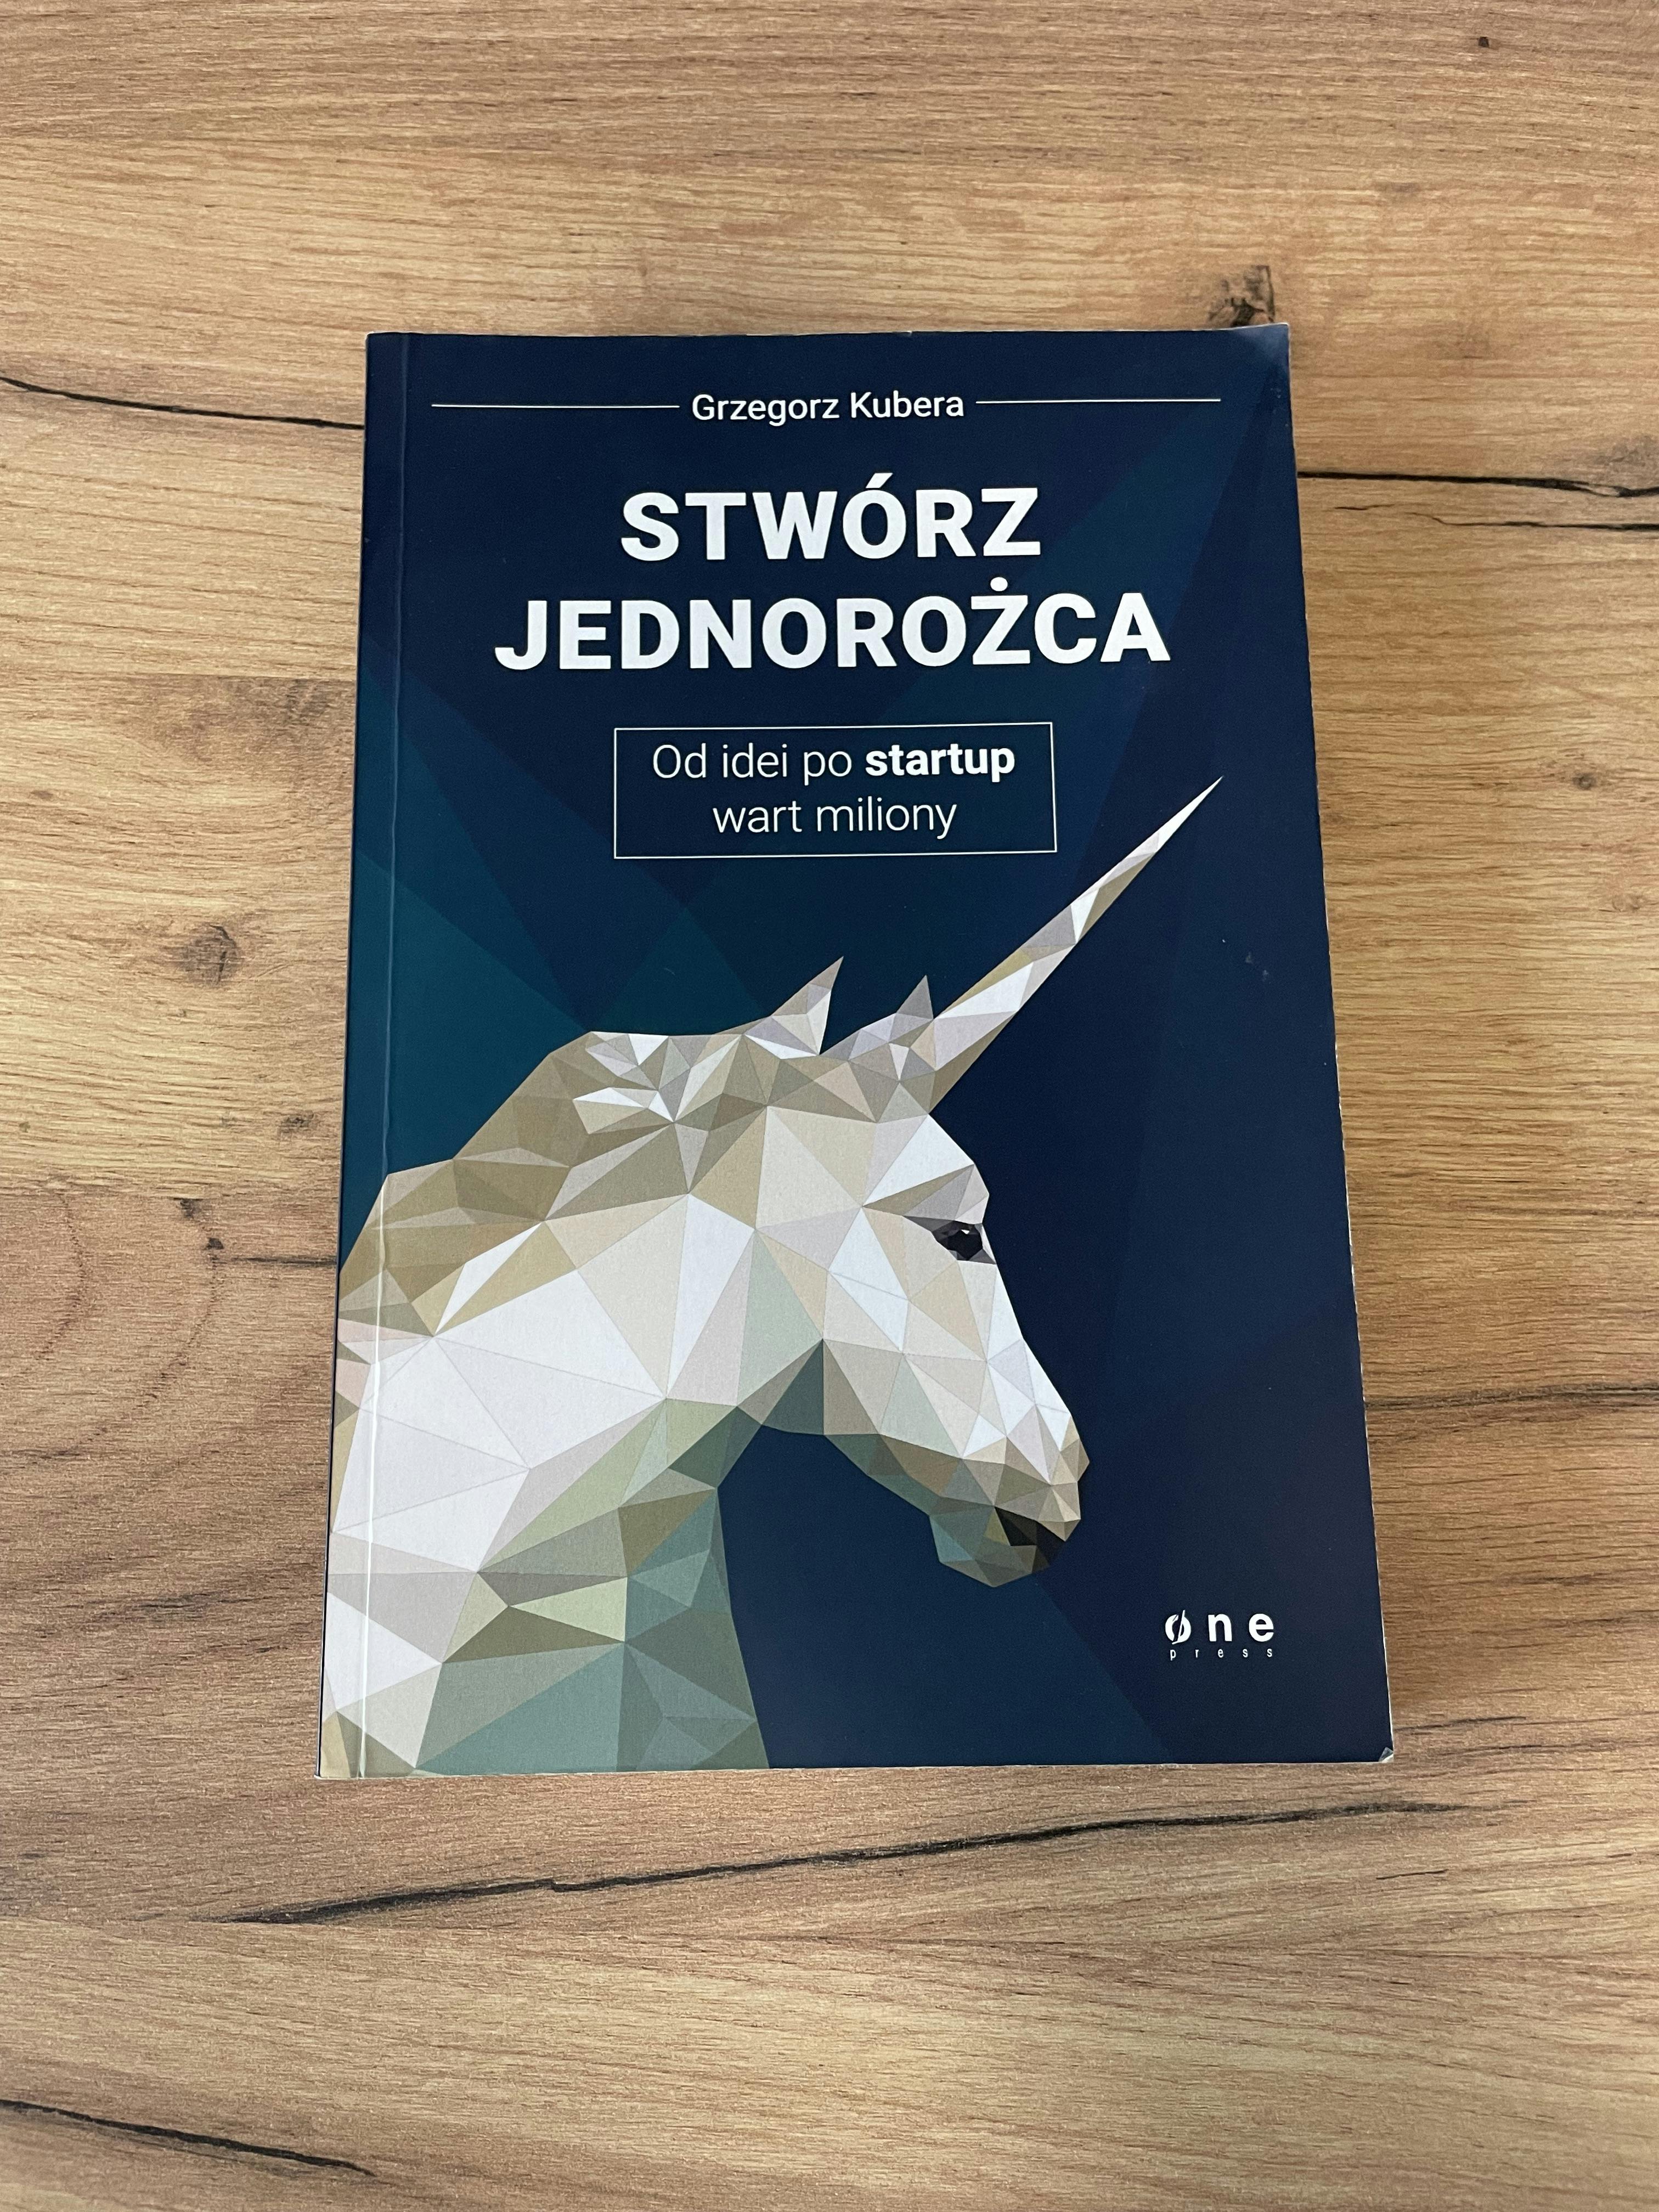 Picture of Książka "Stwórz jednorożca. Od idei po startup wart miliony". Autor: Grzegorz Kubera